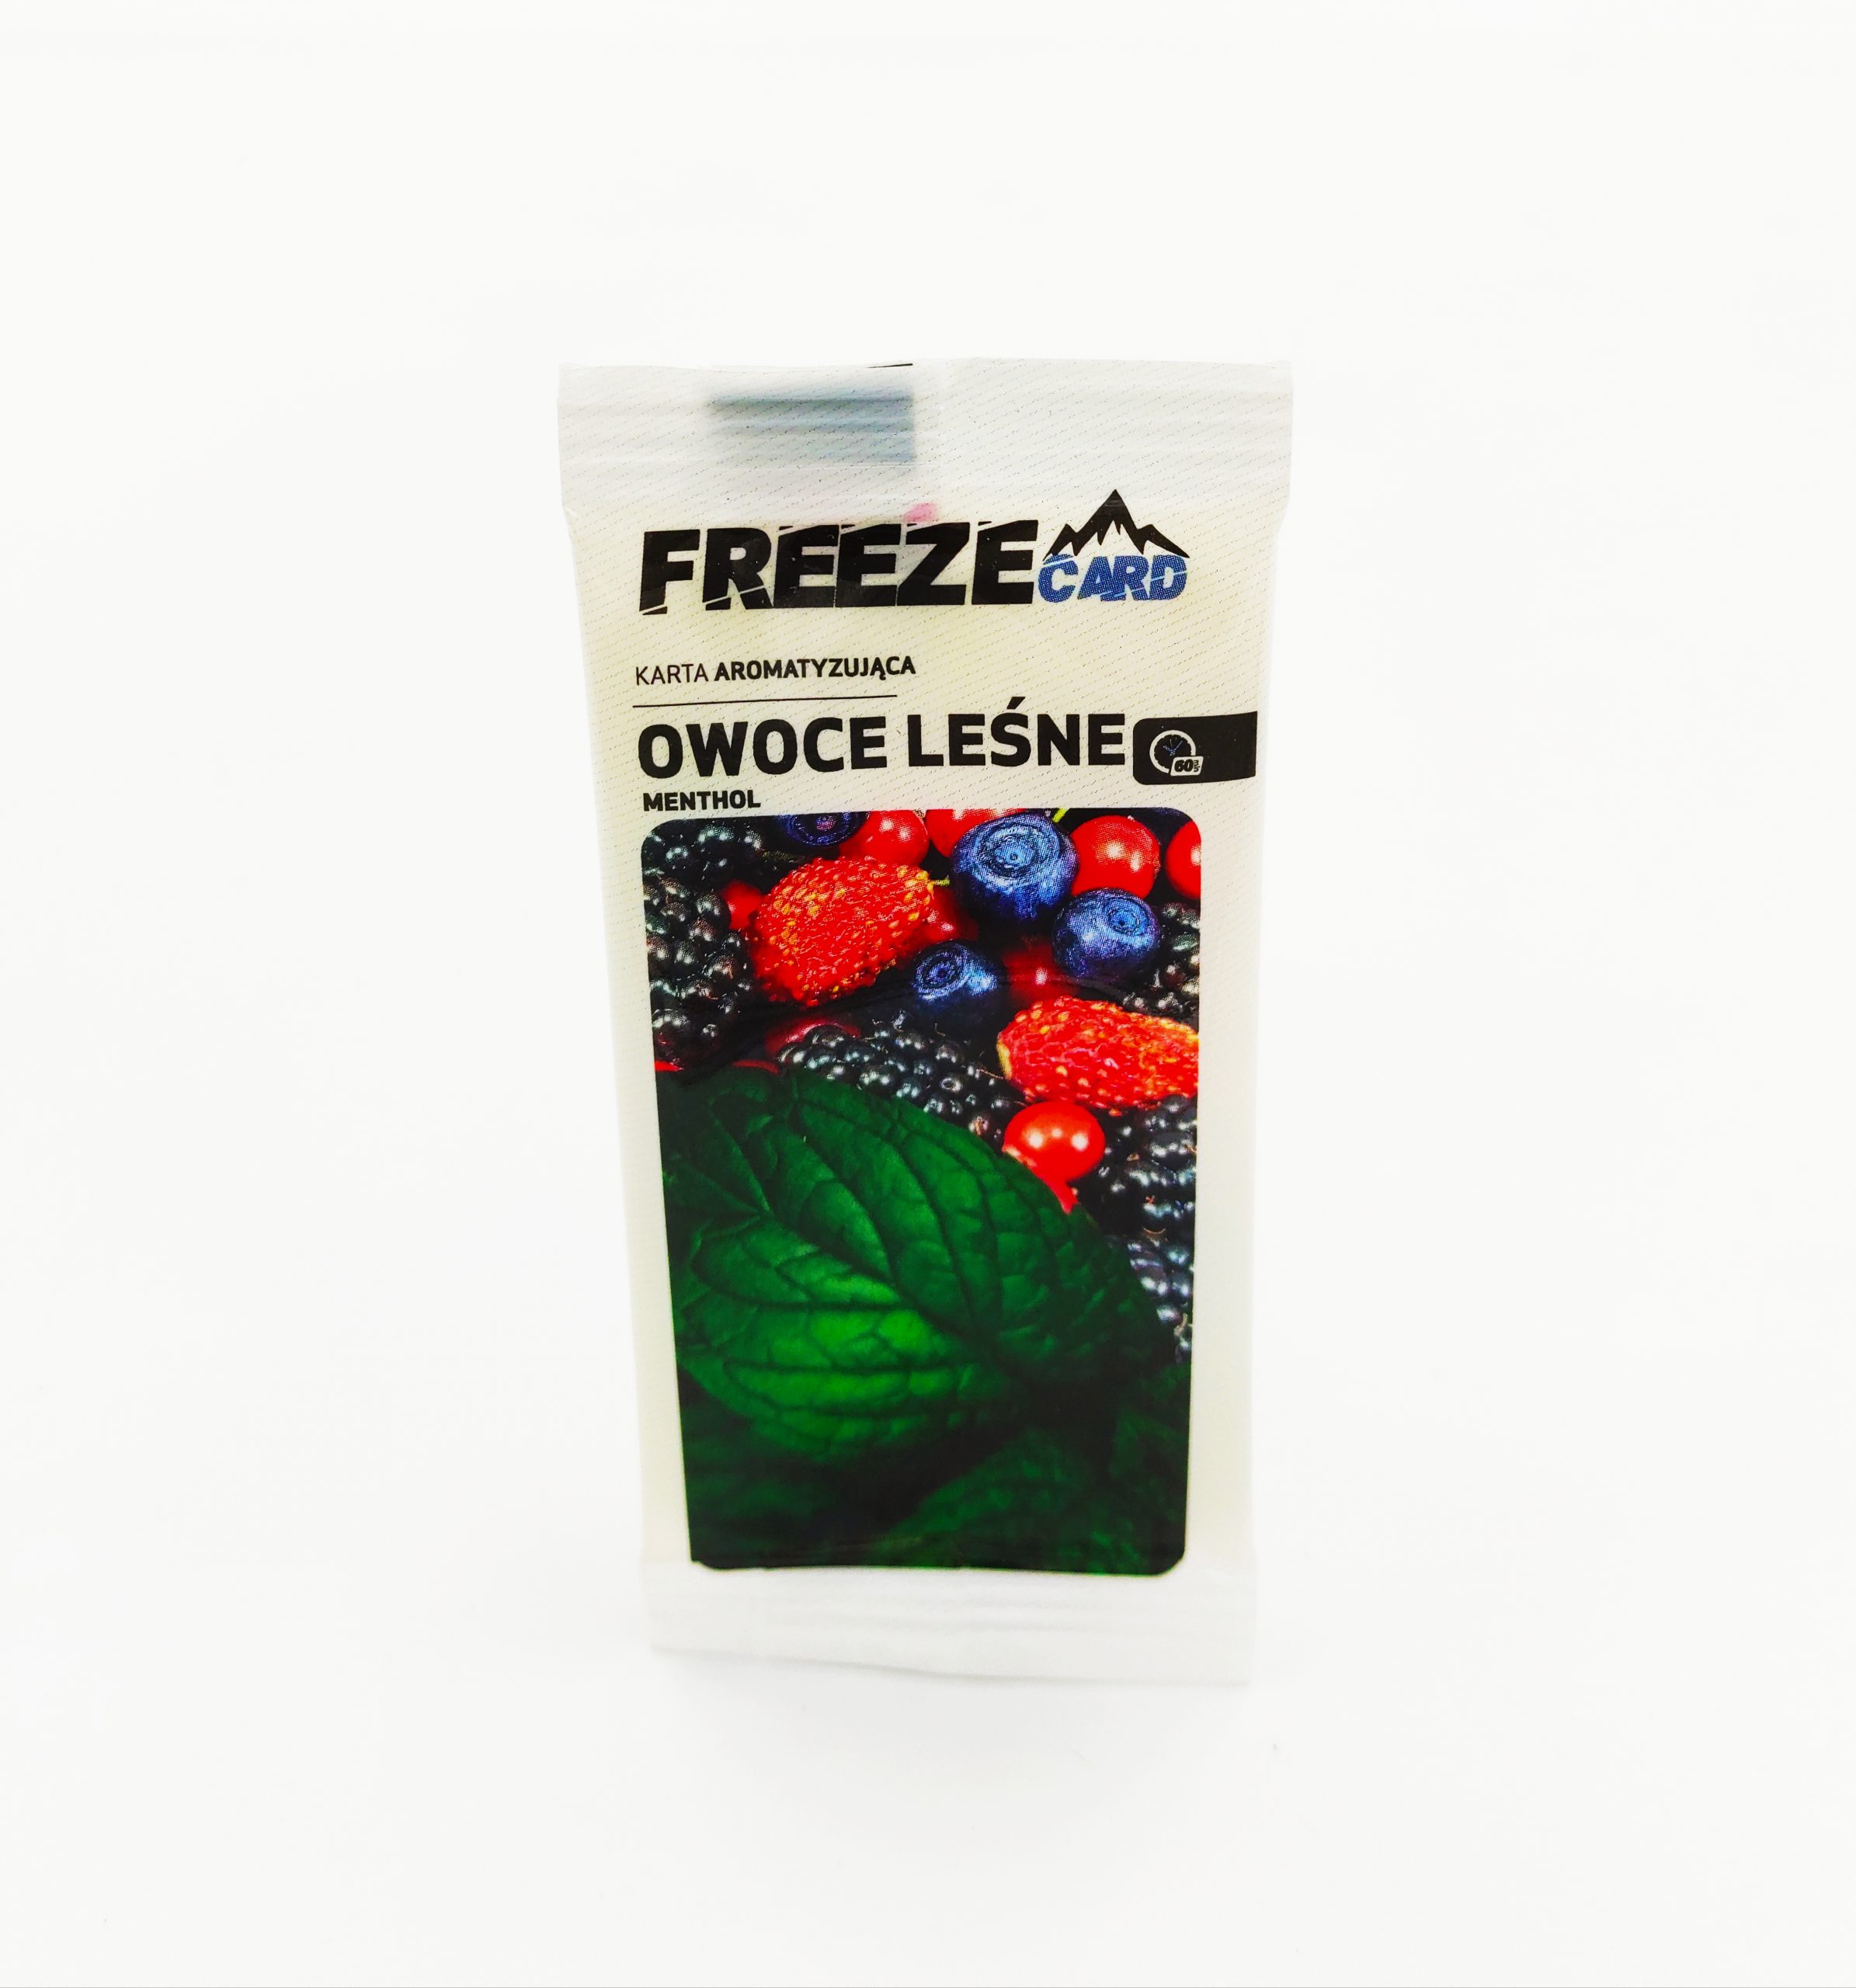 karta aromatyzująca freeze owoce leśne menthol - 2zł